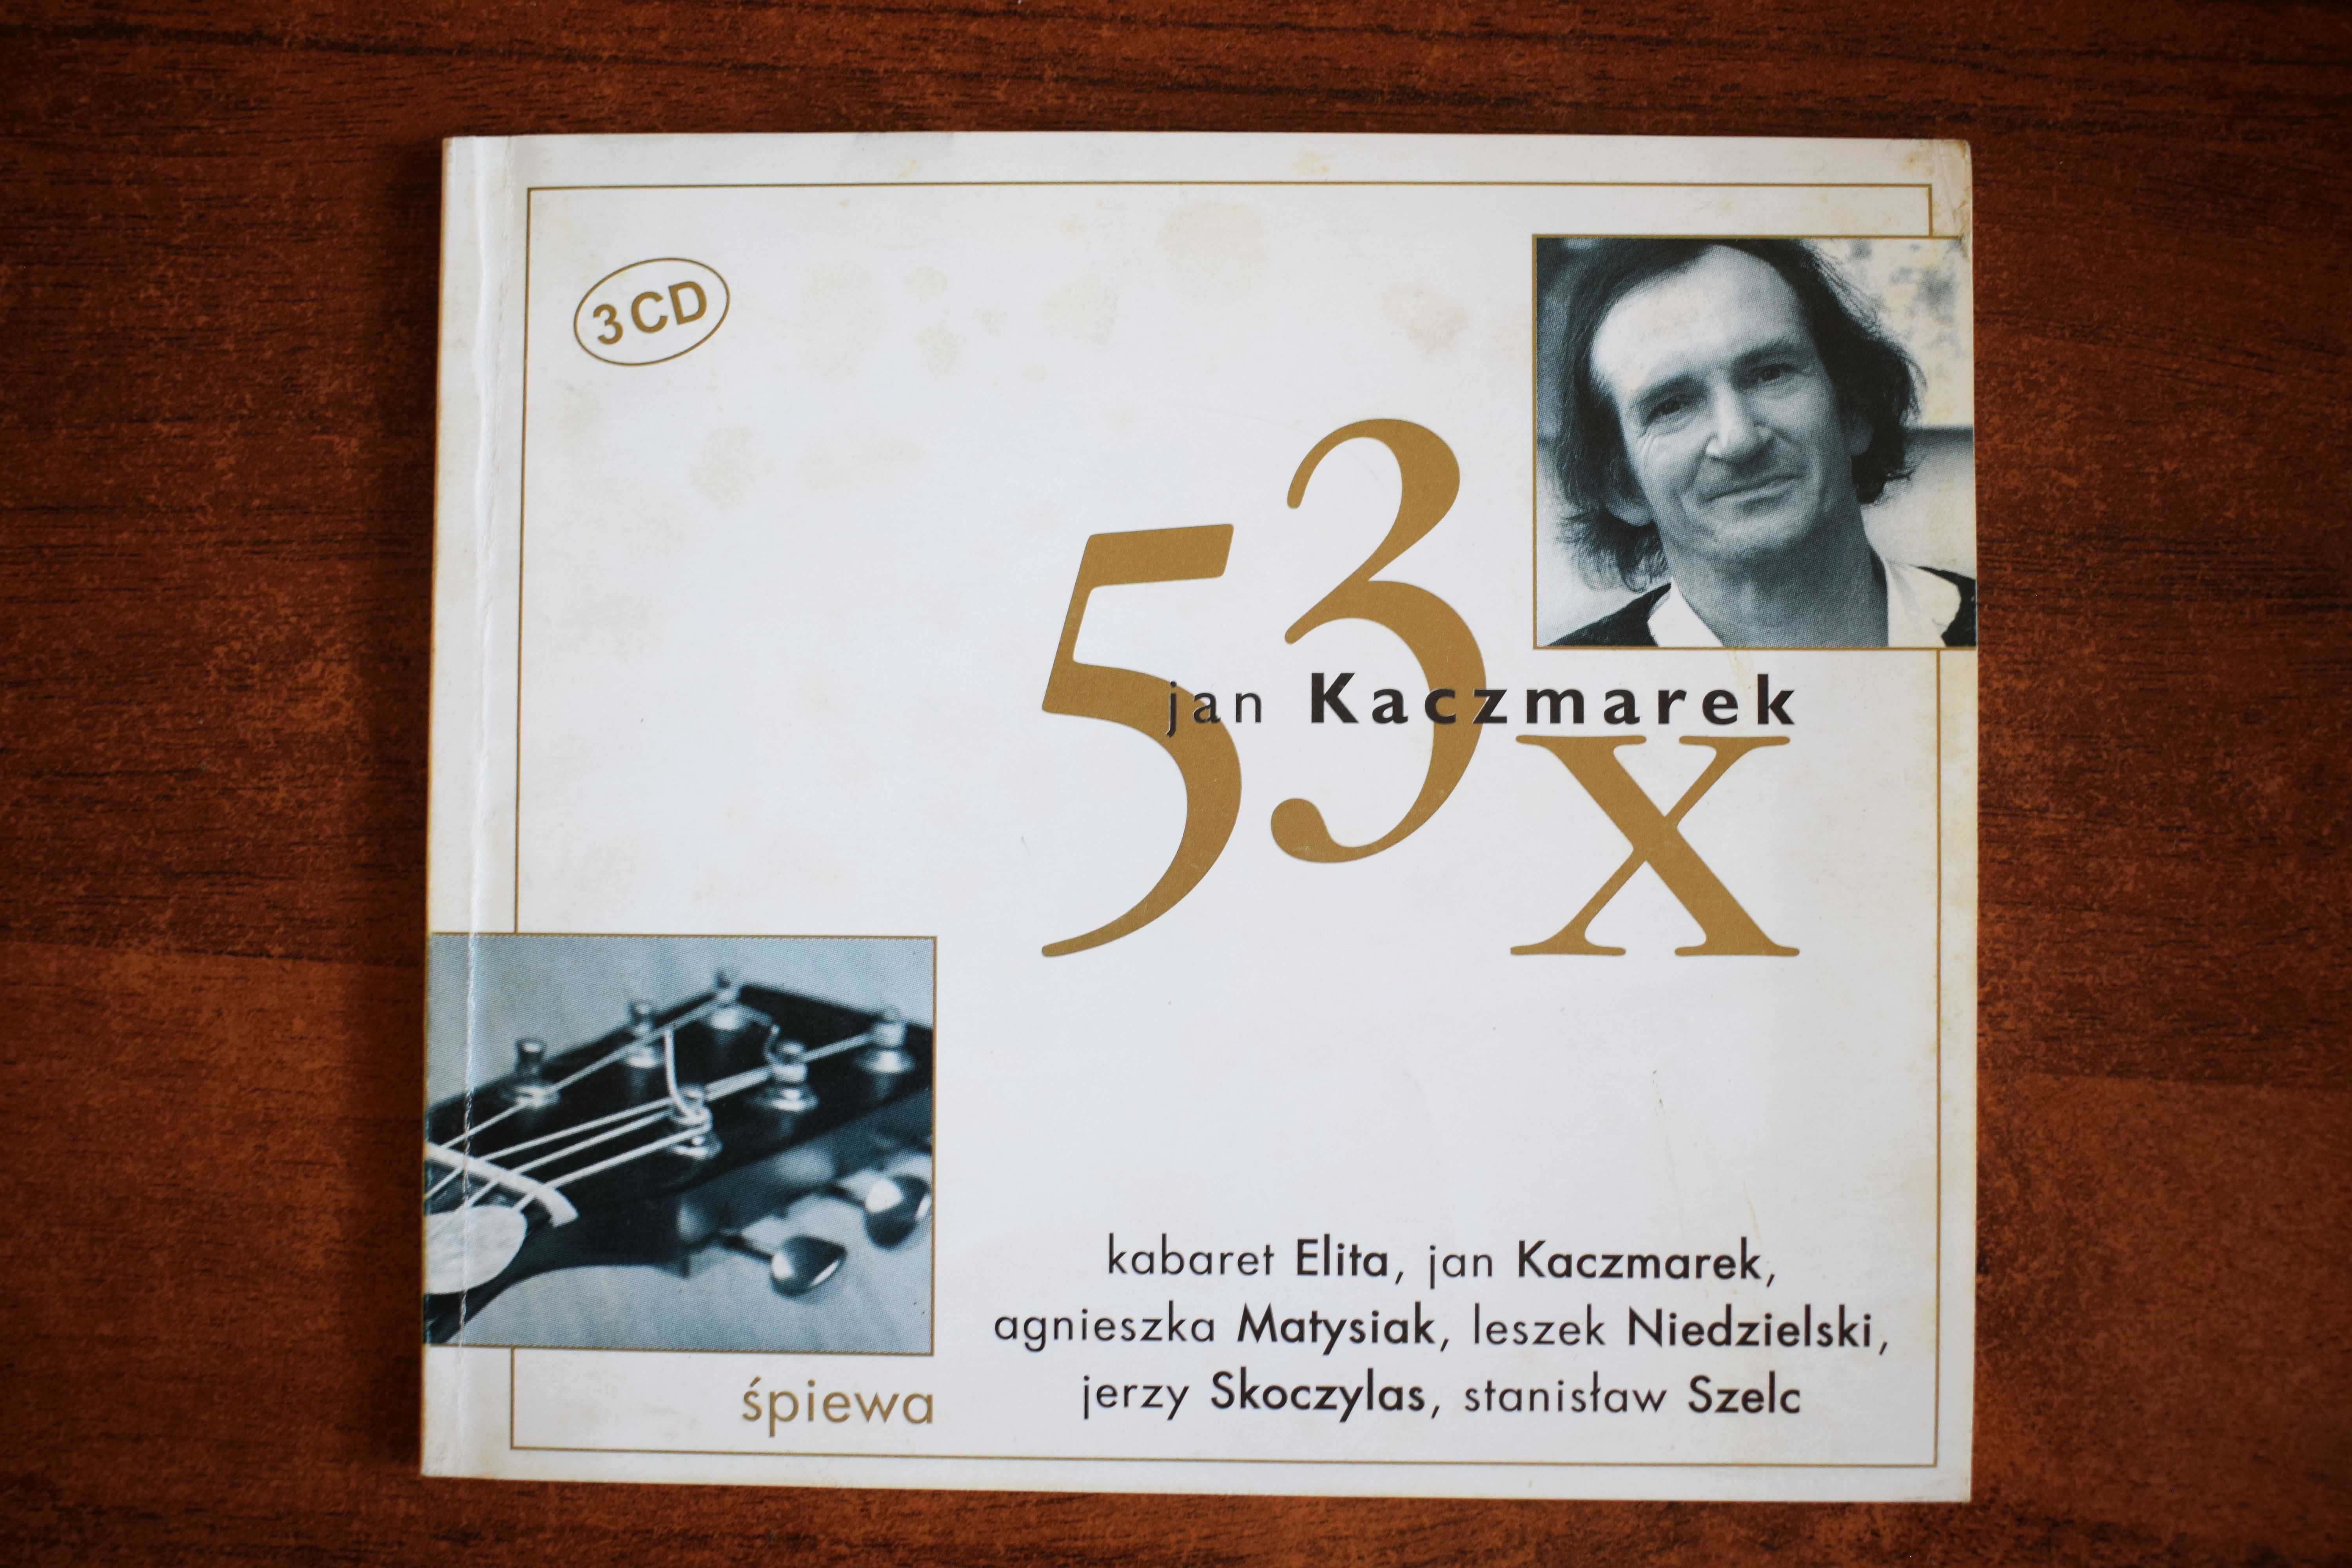 53 x Jan Kaczmarek śpiewa Kabaret Elita Matysiak Niedzielski Skoczylas